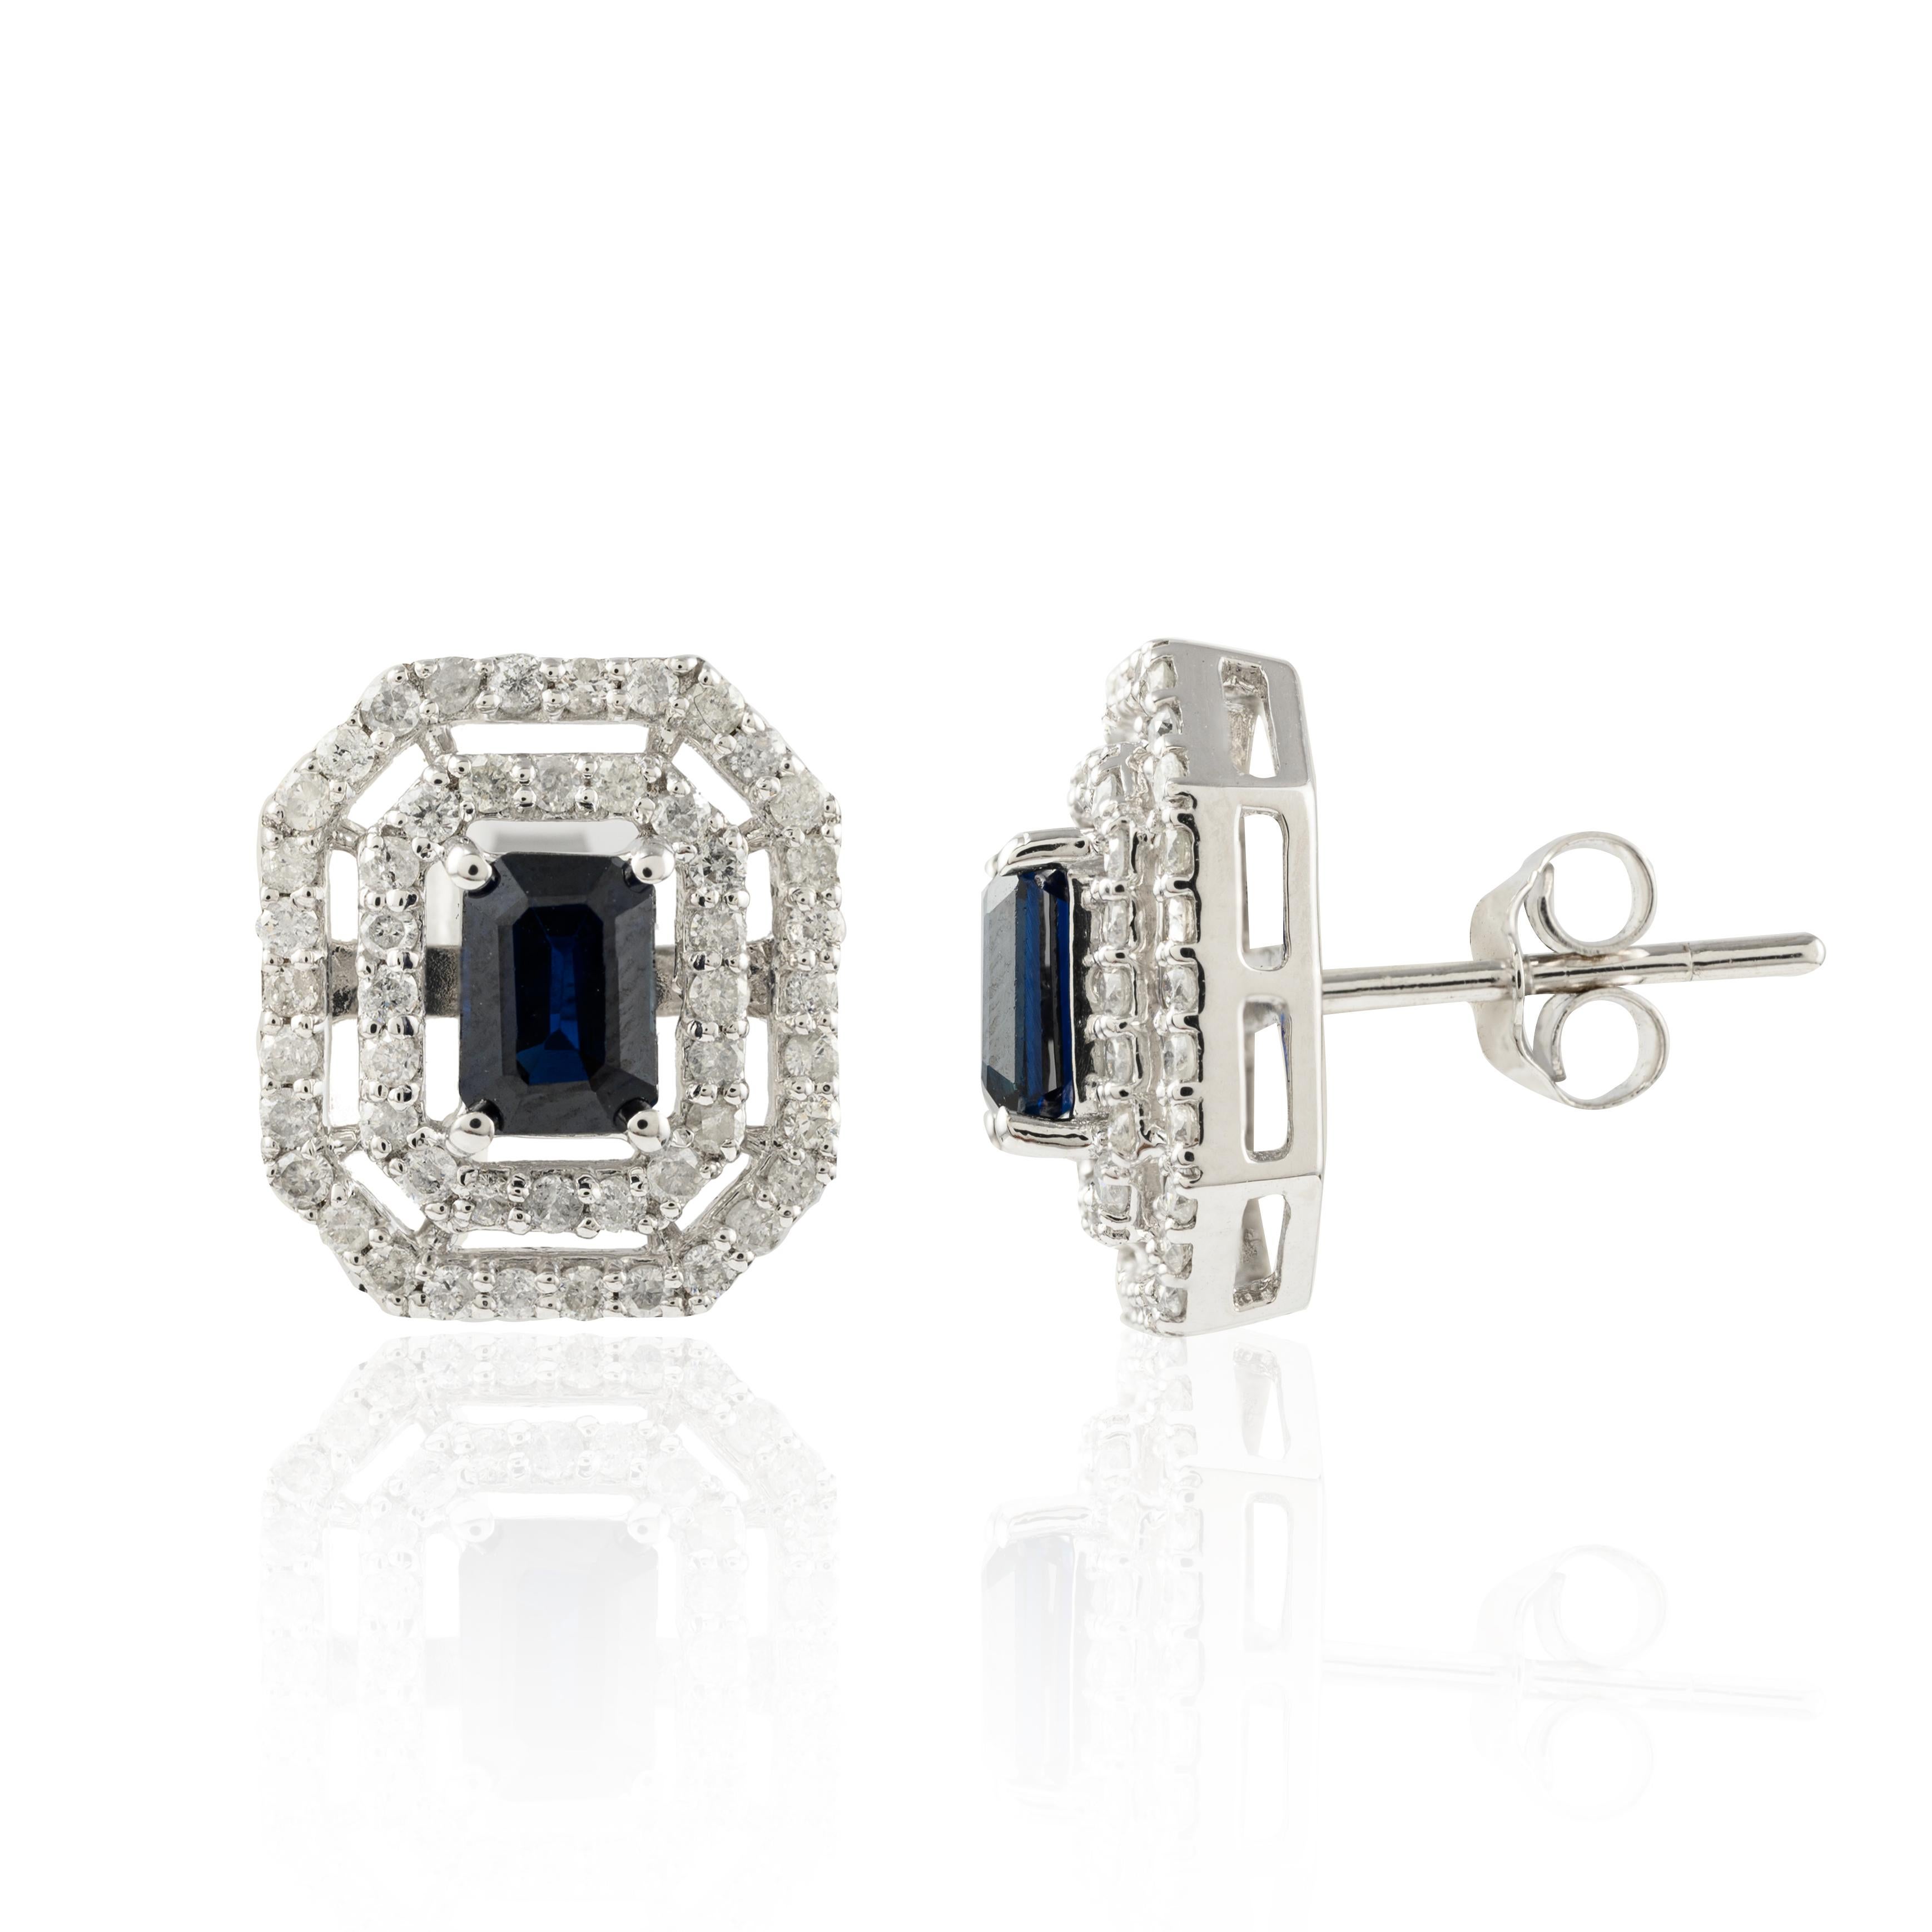 Regal Blue Sapphire Diamond Wedding Stud Earrings in 14K Gold, um mit Ihrem Look ein Statement zu setzen. Sie brauchen Ohrstecker, um mit Ihrem Look ein Statement zu setzen. Diese Ohrringe mit achteckig geschliffenen Saphiren sorgen für einen